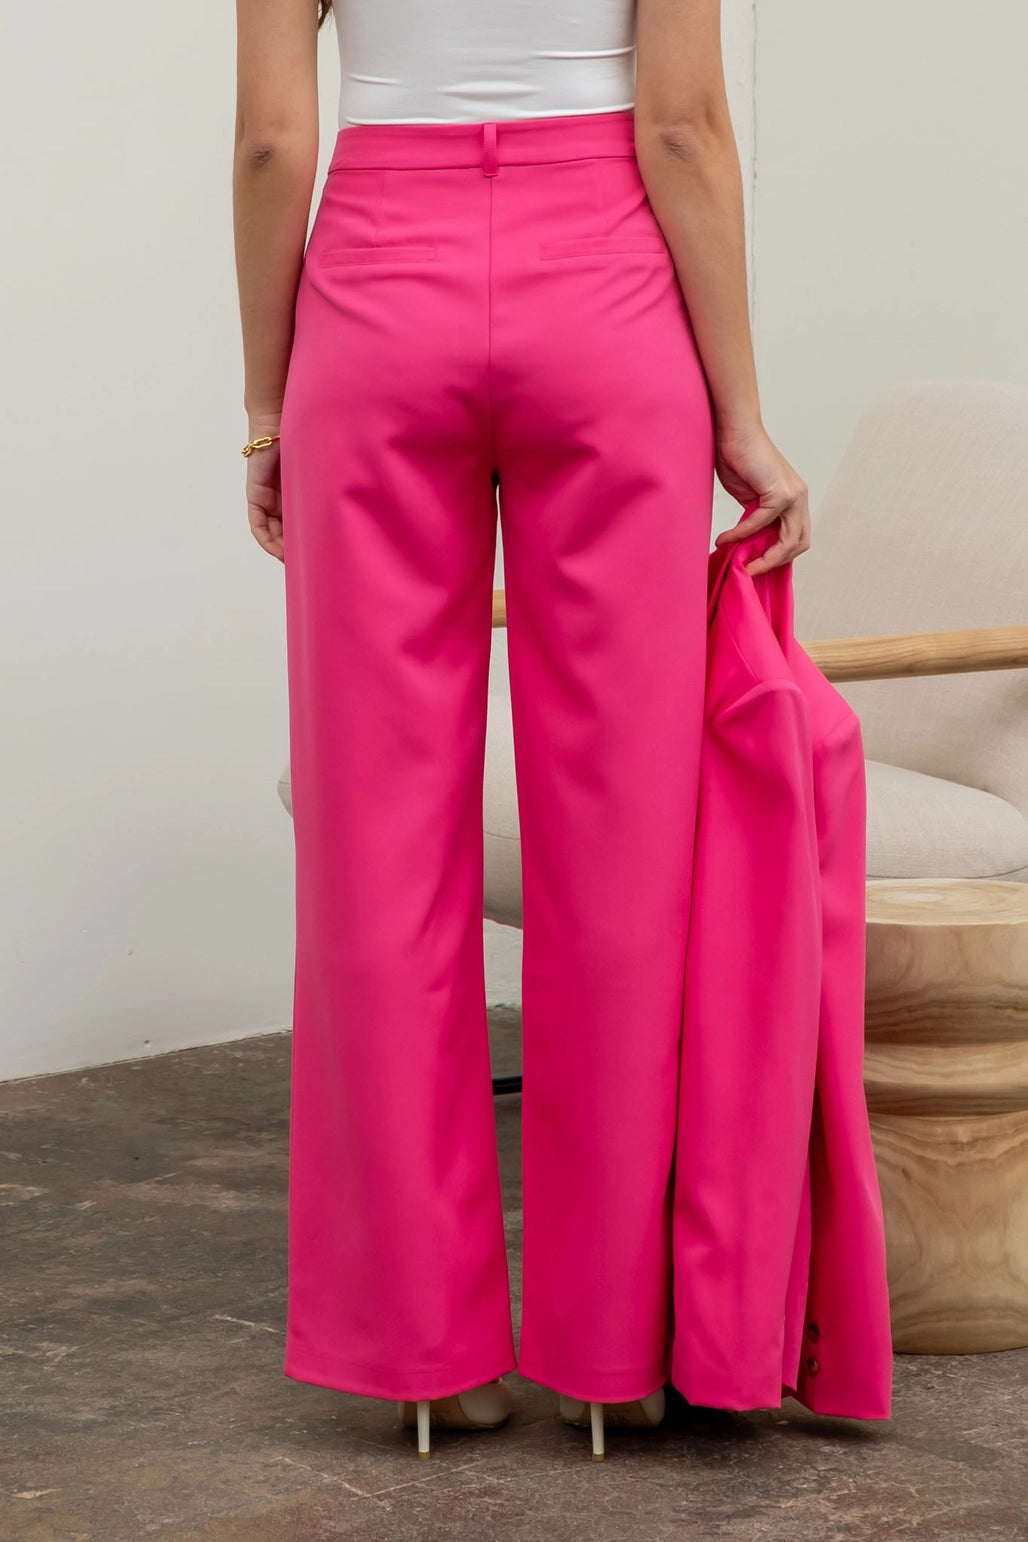 Upscale 2 Piece Suit Set- Hot Pink